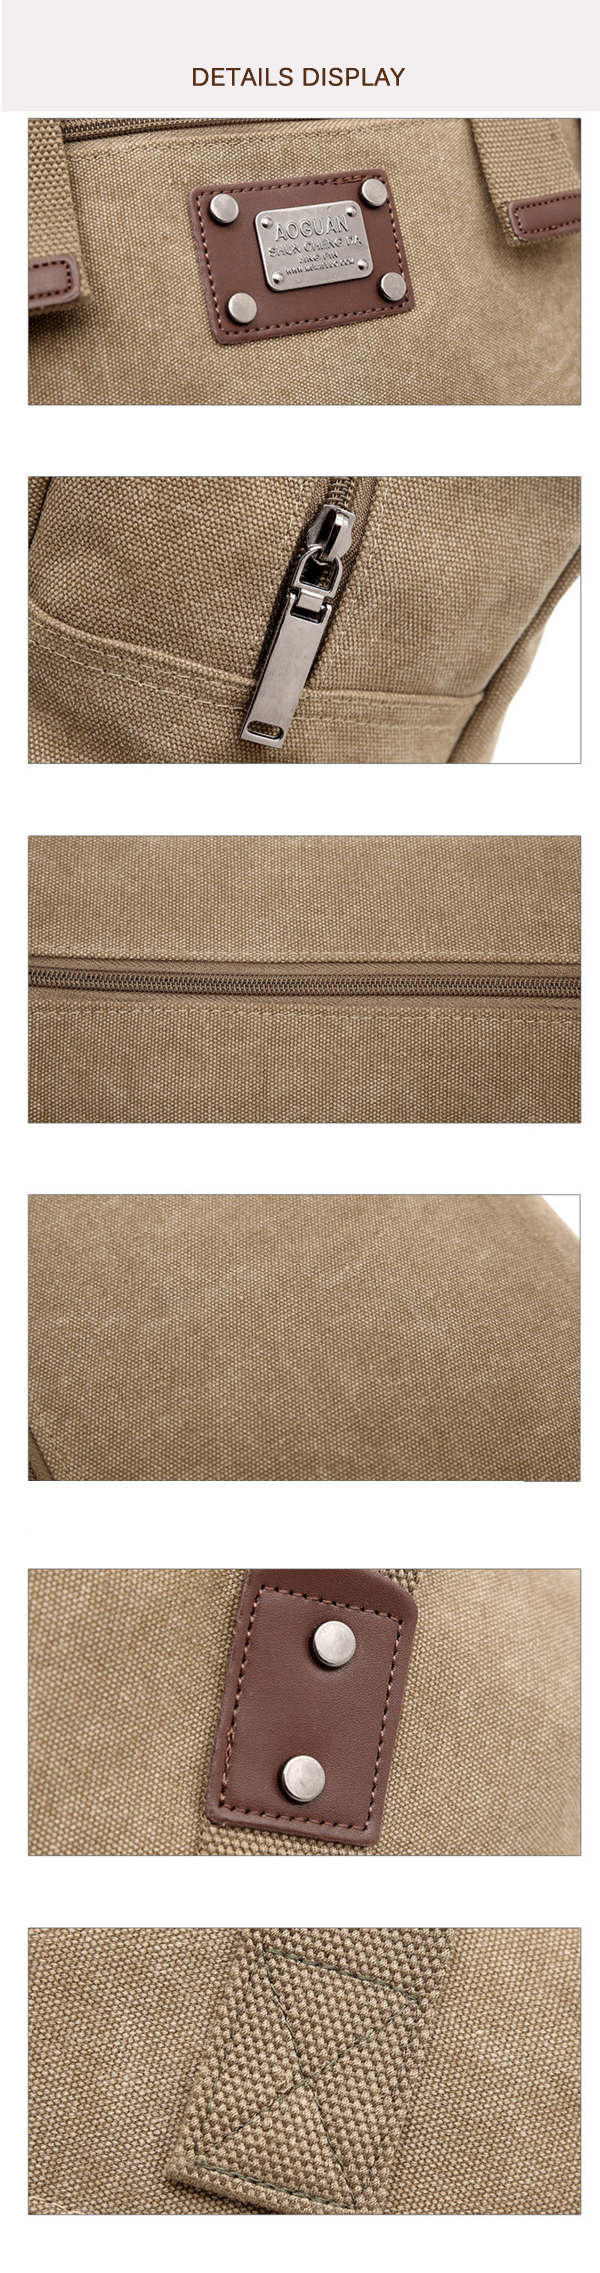 Canvas-Handbag-Shoulder-Bag-Large-Capacity-Messenger-Bag-for-Men-1230423